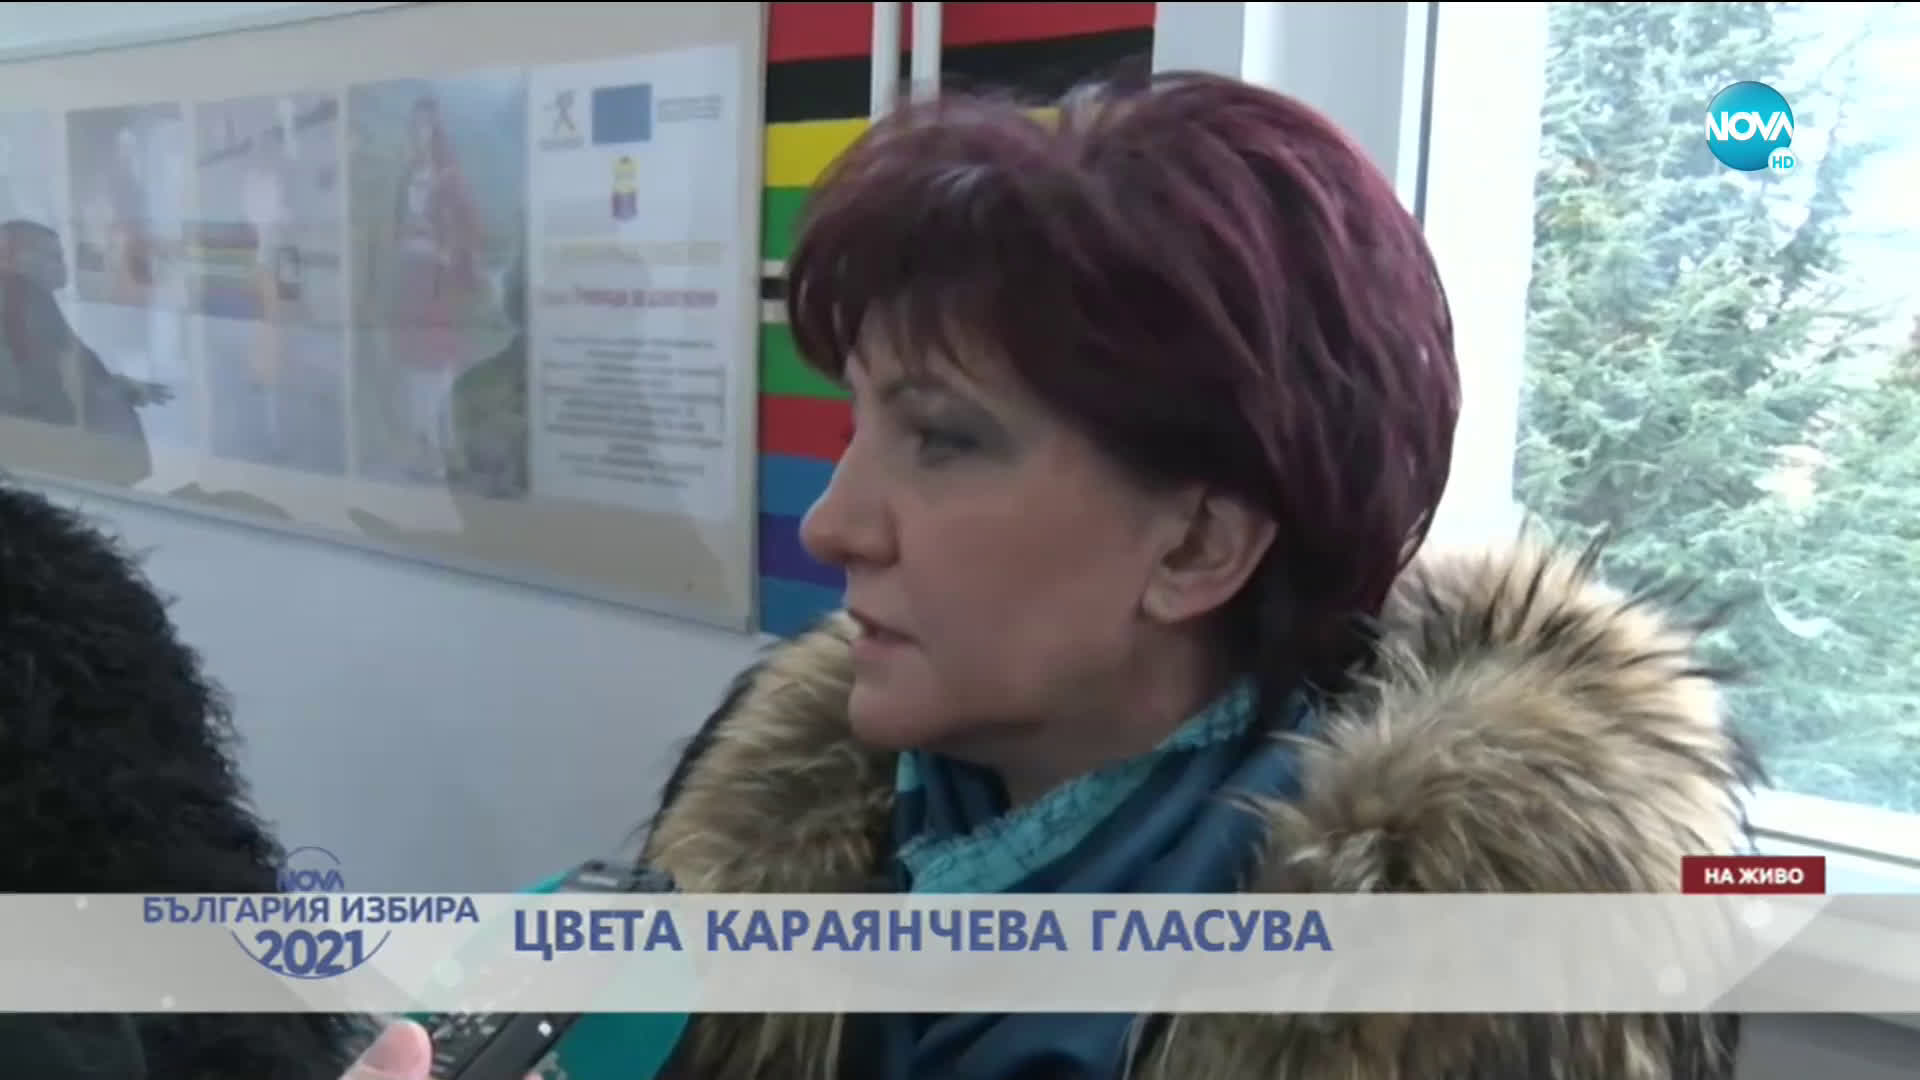 Цвета Караянчева: Гласувах за стабилност и прозрачност в управлението